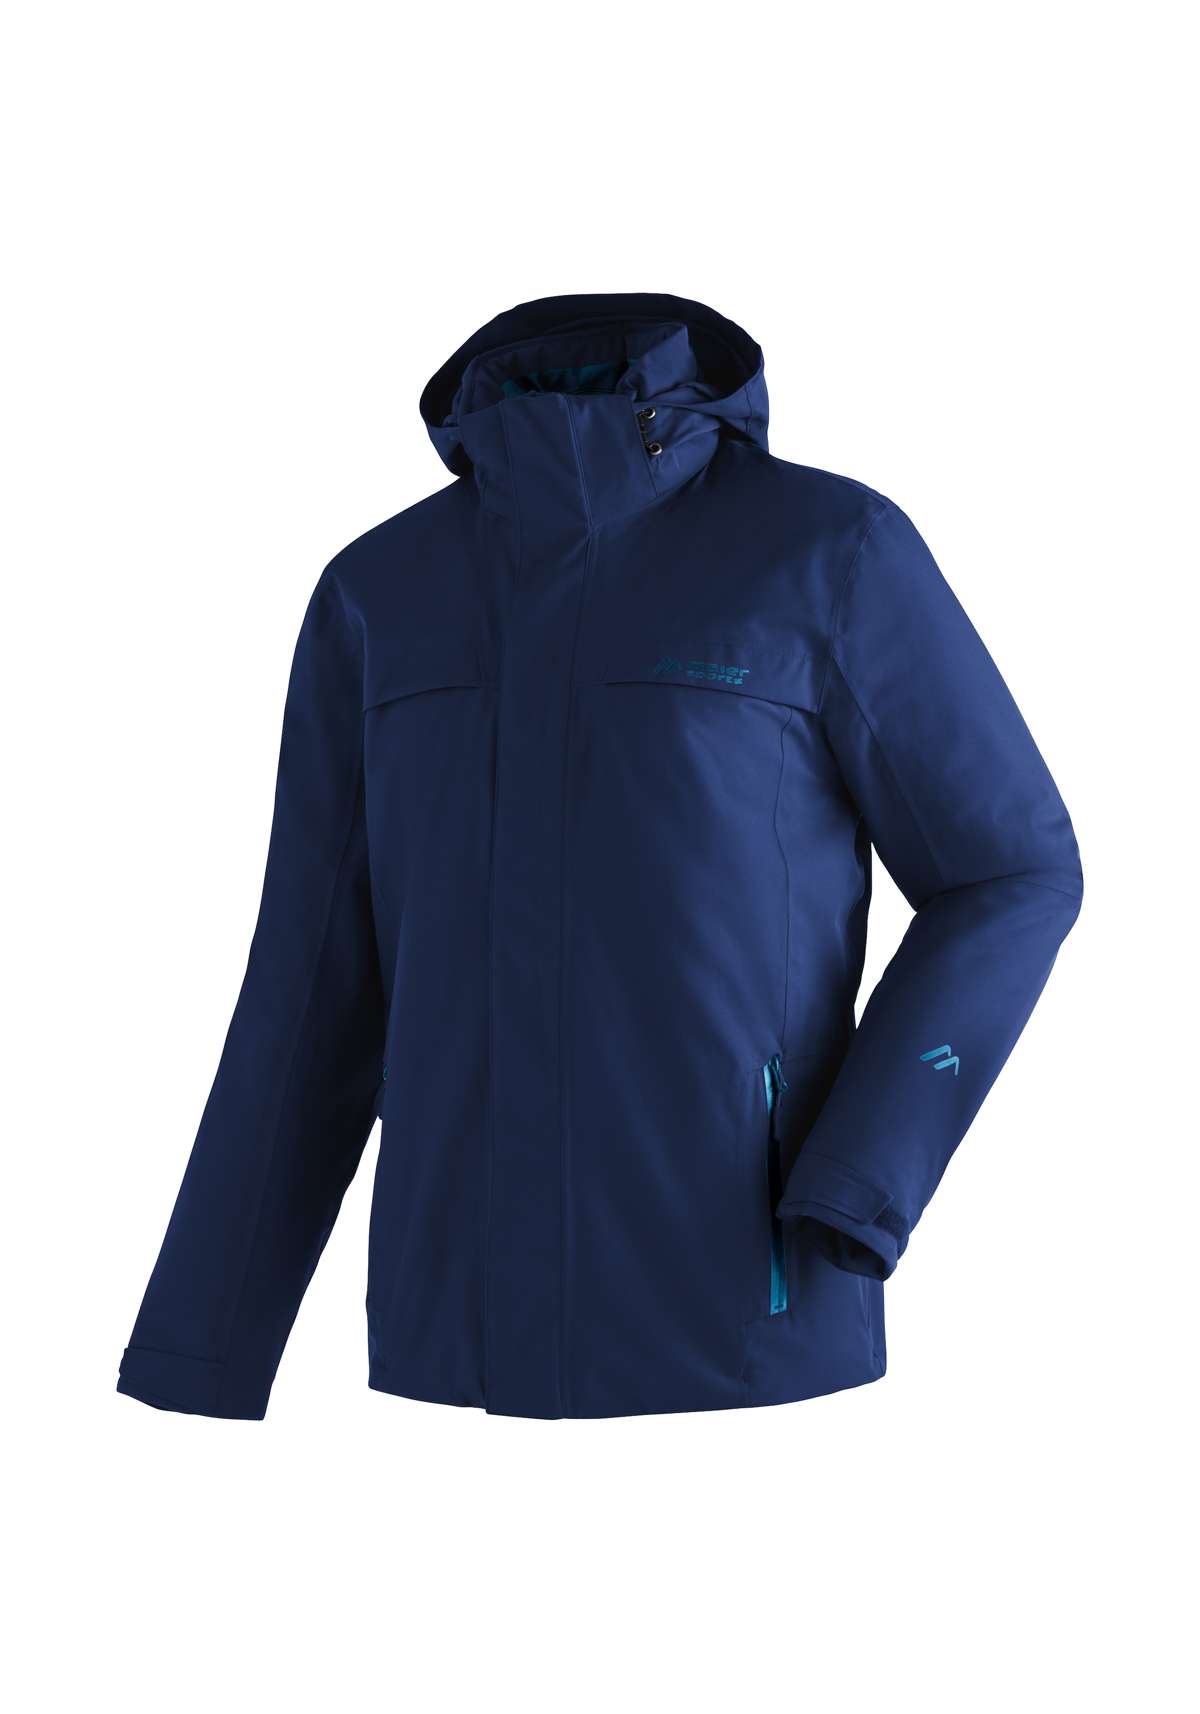 Функциональная куртка, подходящая для зимы, водонепроницаемая и дышащая.